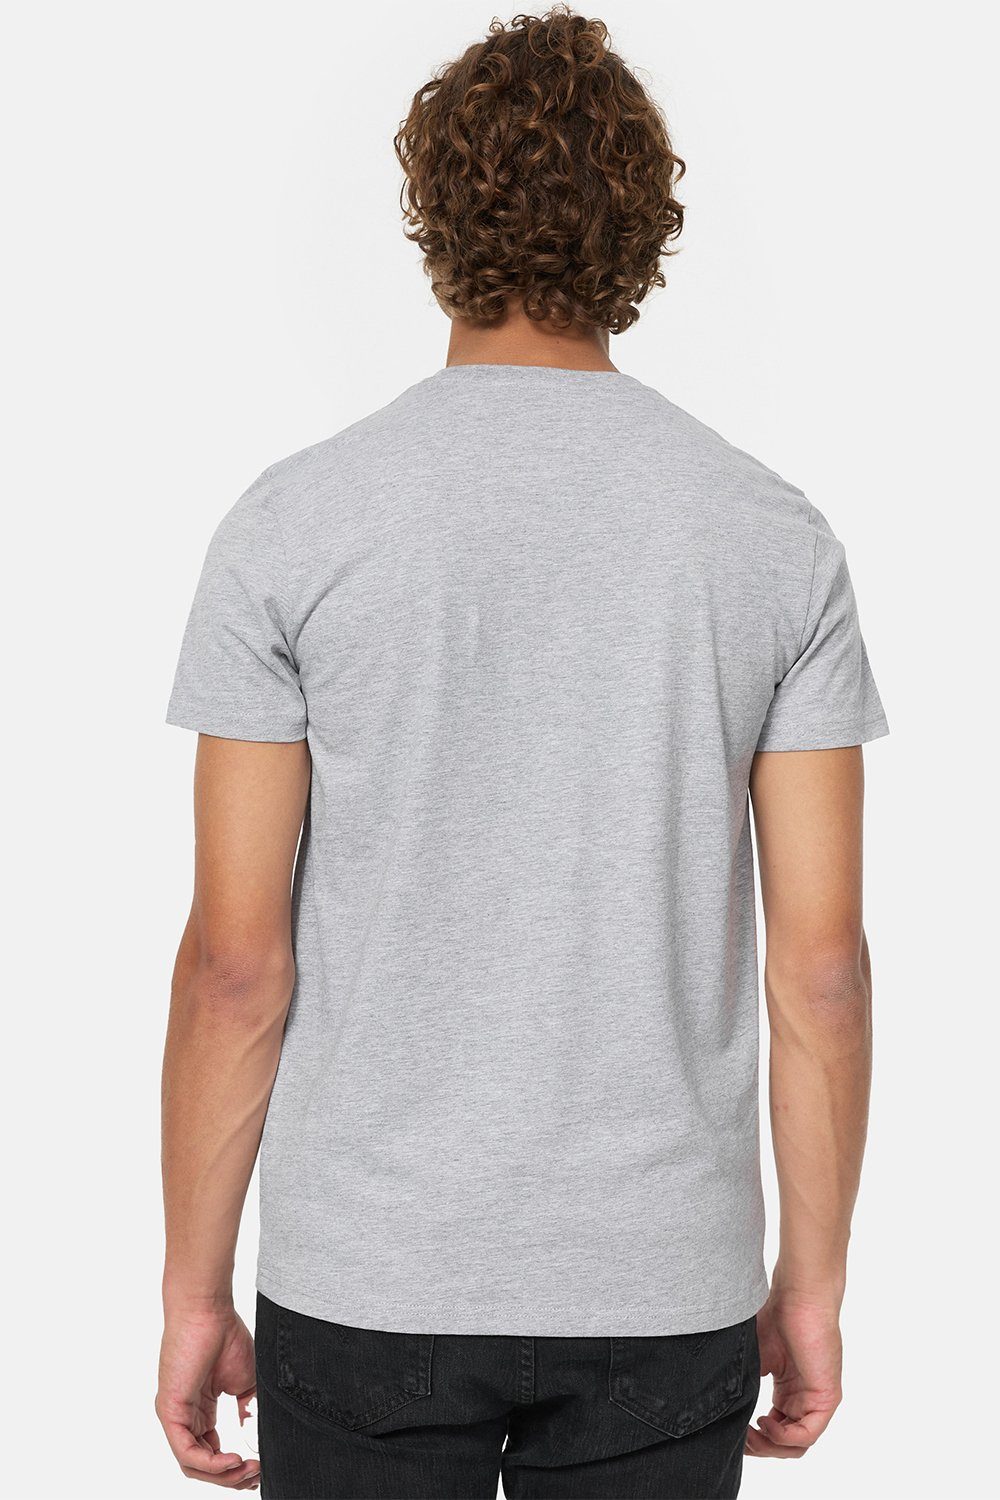 Lonsdale Grey/Black T-Shirt Marl DERVAIG